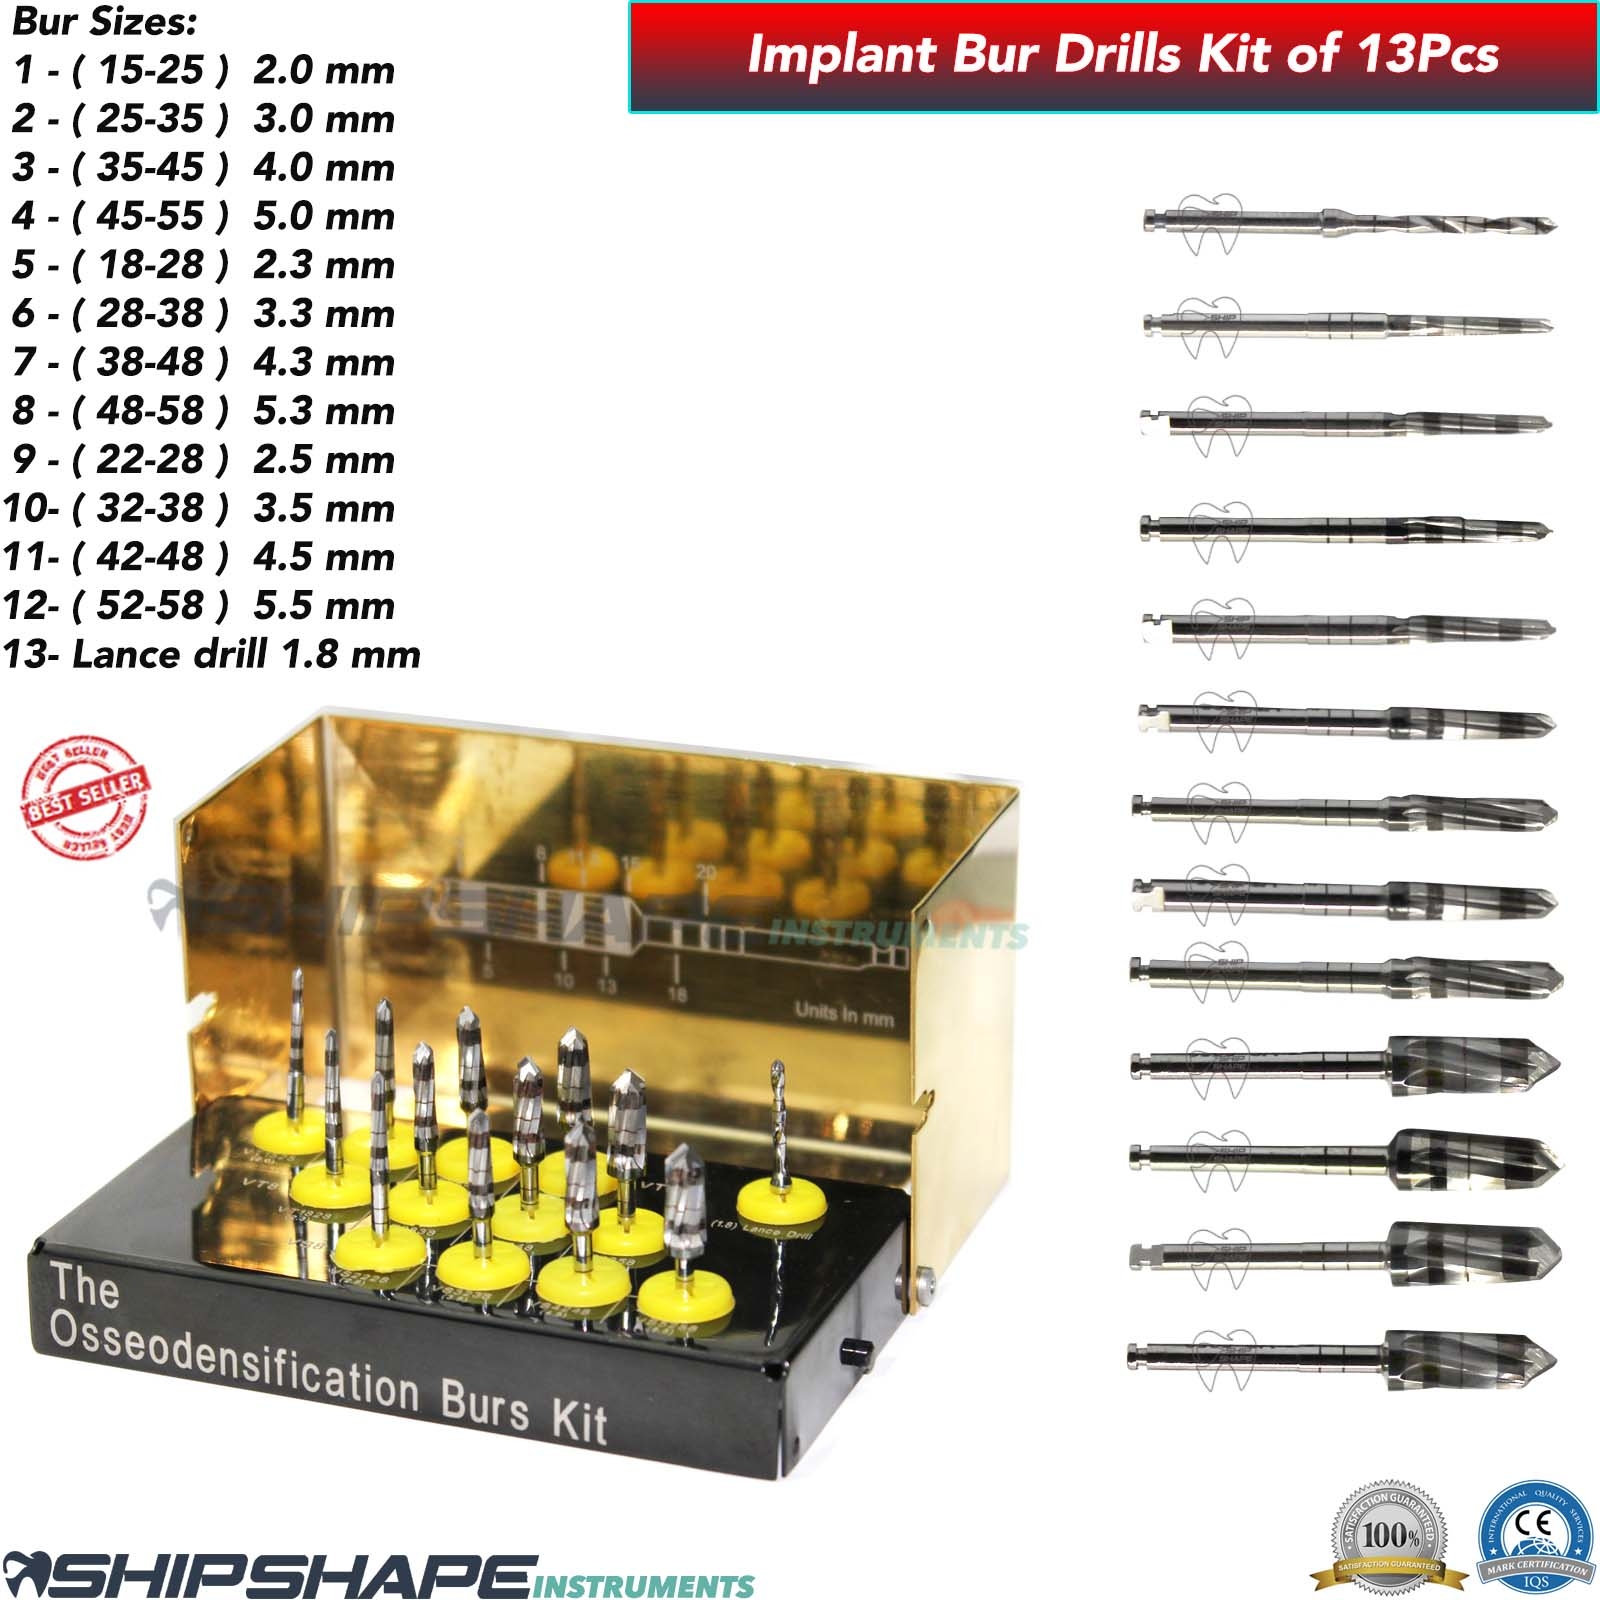 Bur Drills Kit Titanium Coated Dental Implant Universal Burs Drill Set of 13 Pcs Kit $179.00 Only-1554